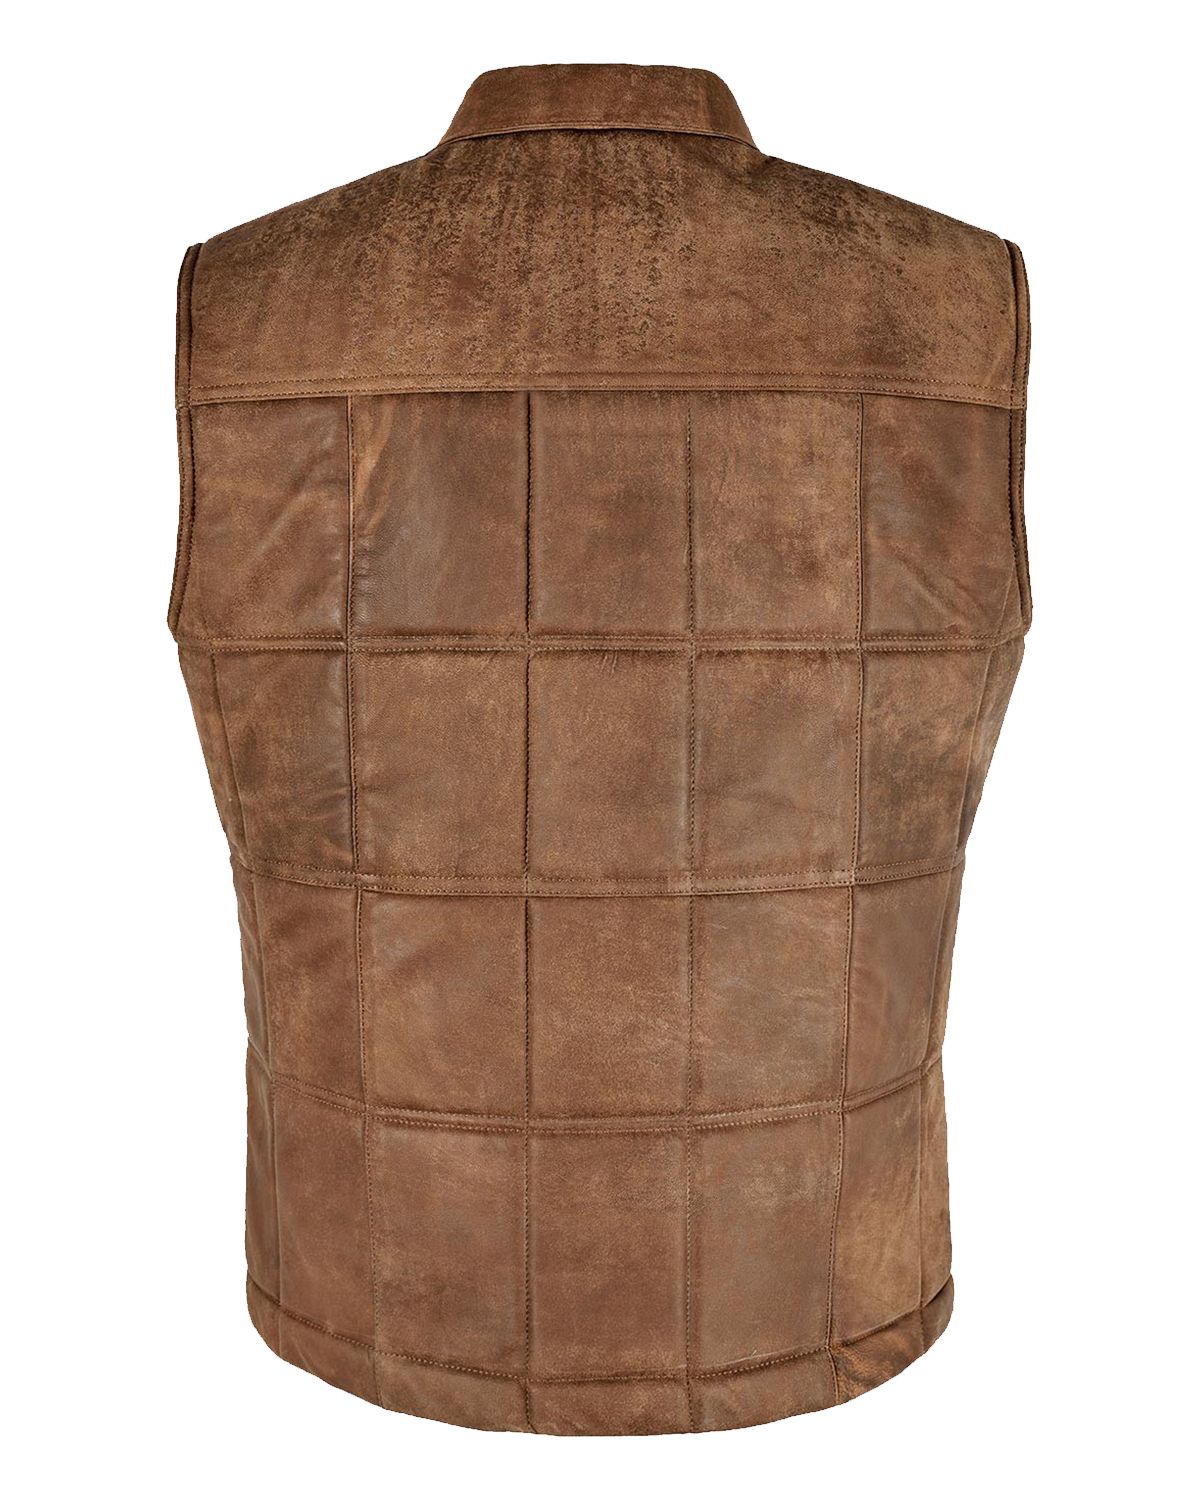 Vintage Brown Body Warmer Leather Vest | Elite Jacket